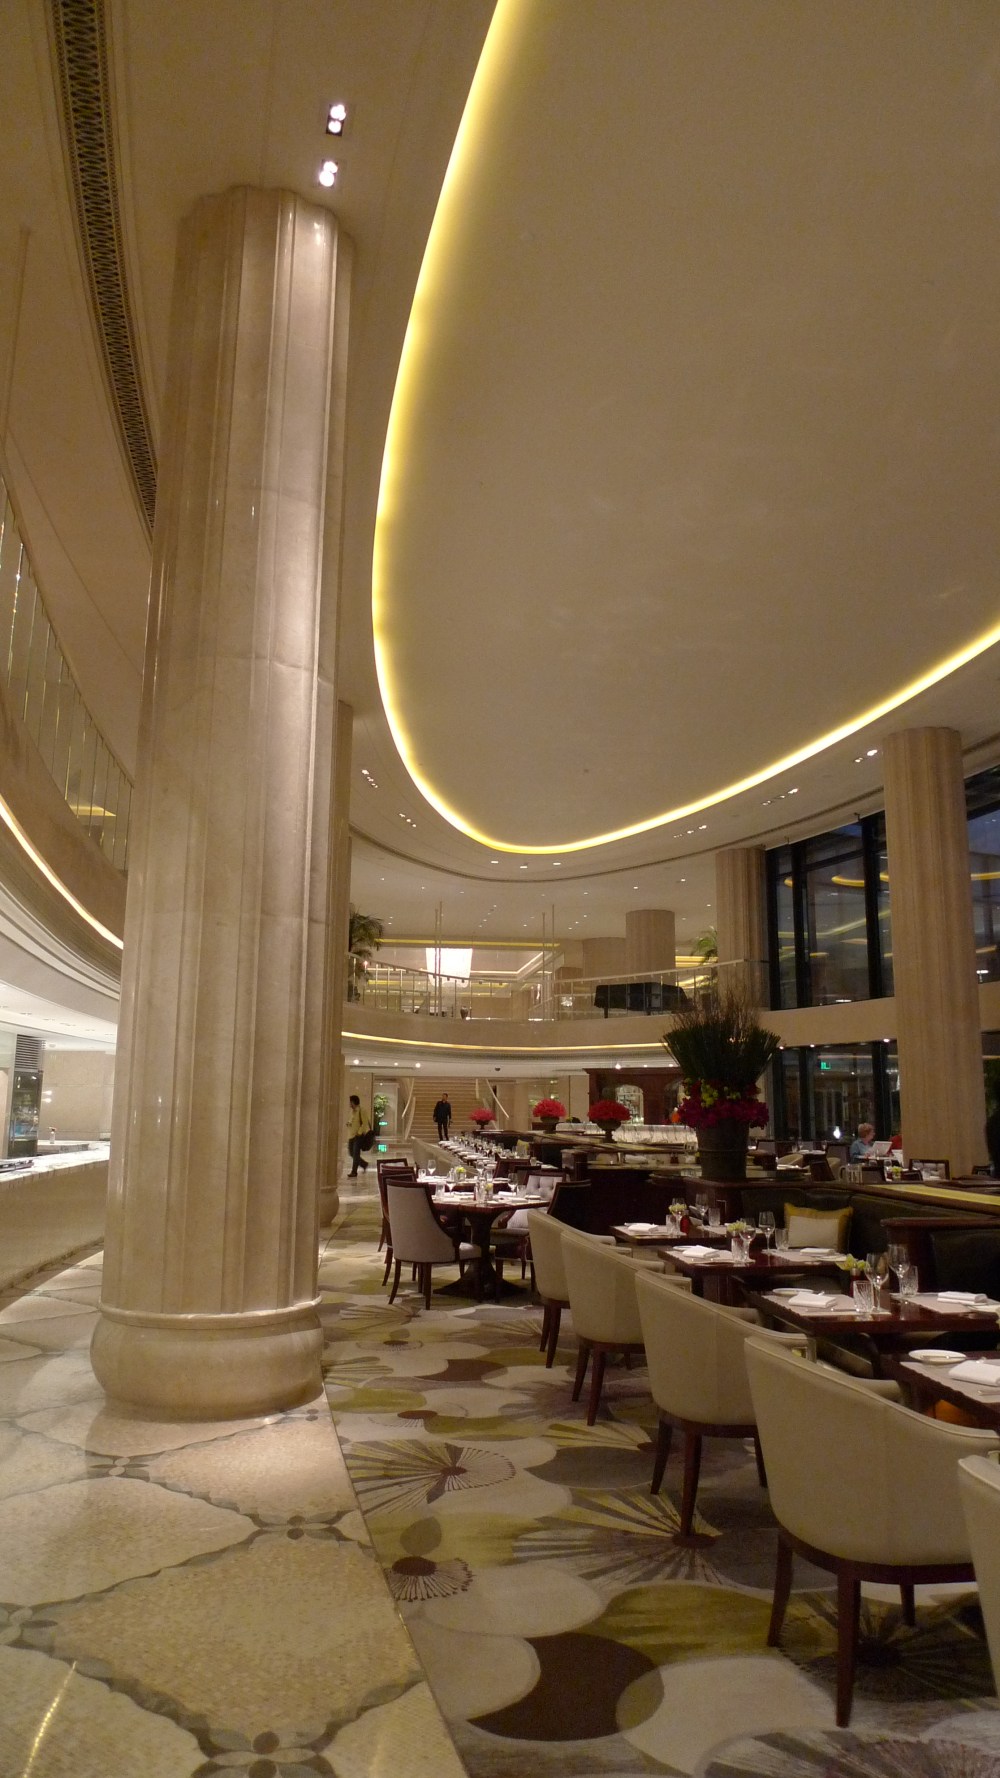 上海华尔道夫酒店(The Waldorf Astoria OnTheBund)(HBA)10.9第10页更新_L1050022.JPG